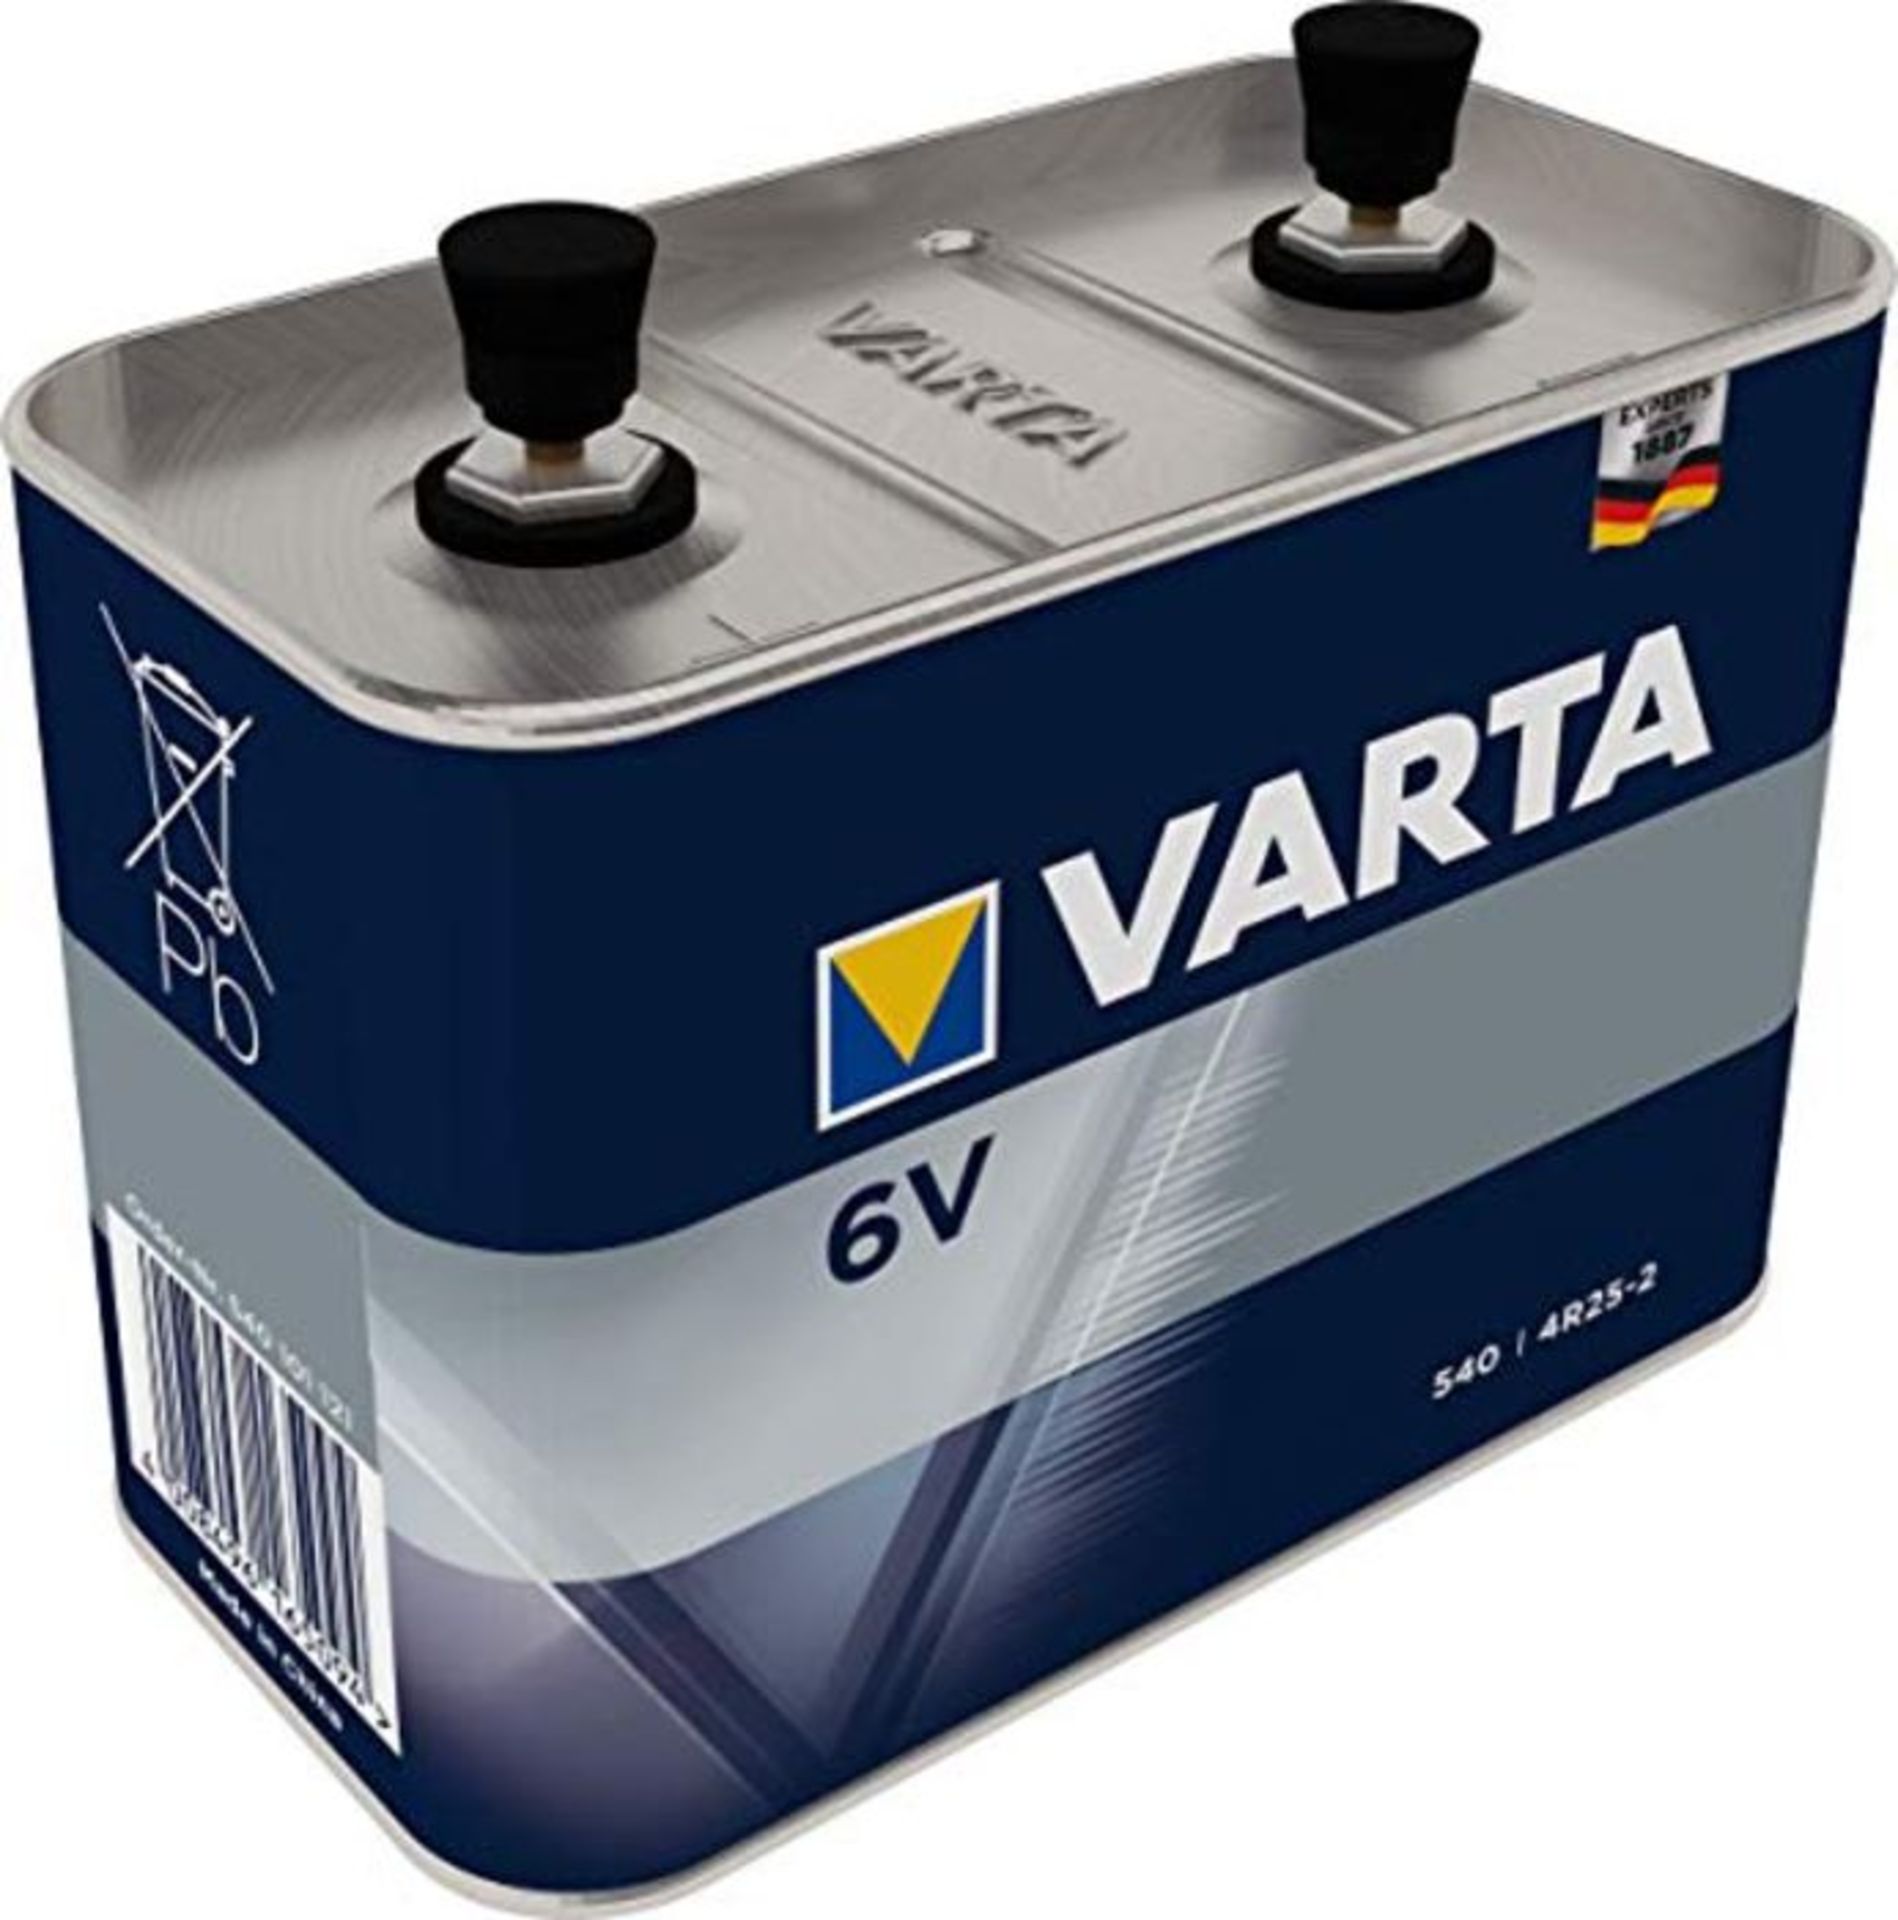 Varta - Batterie spÃ©cifique usage professionnel 4 R 25 2 MÃ©tal (540) - 1 piÃ¨c